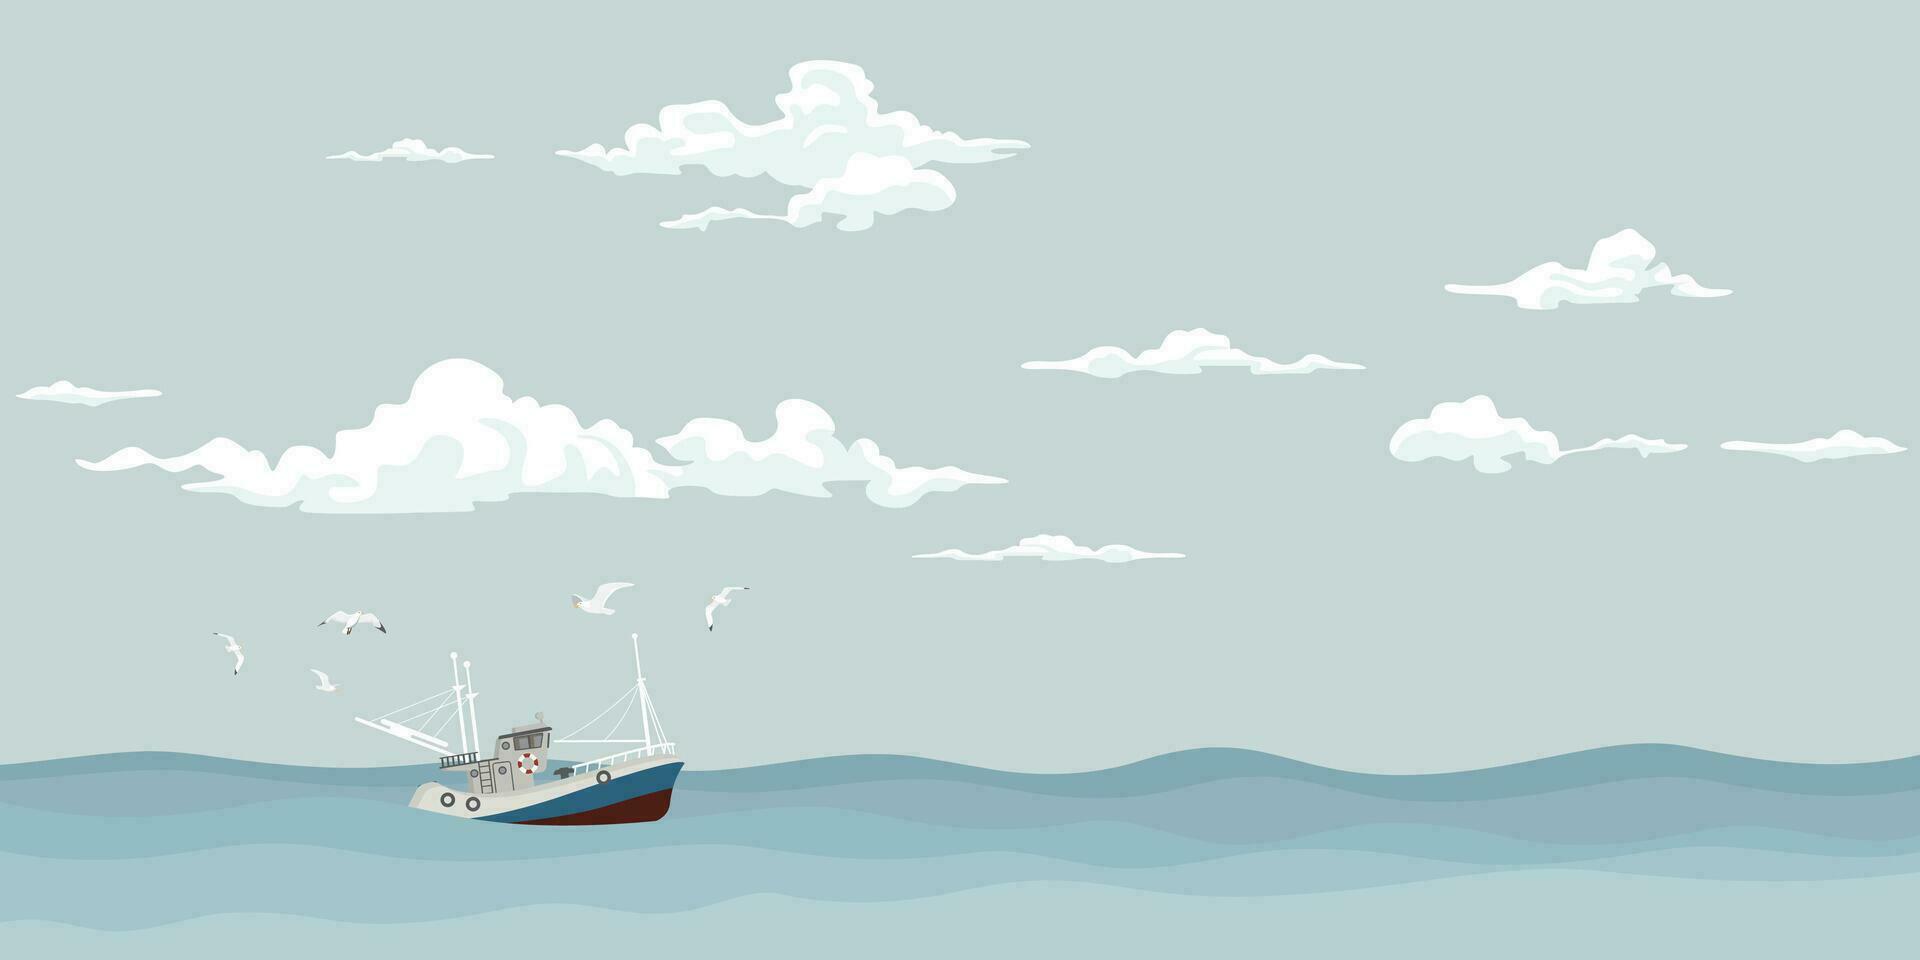 zeegezicht met visvangst boot gevolgd door meeuwen Bij horizon vector illustratie. oceaan met schip, lucht en wolken achtergrond.